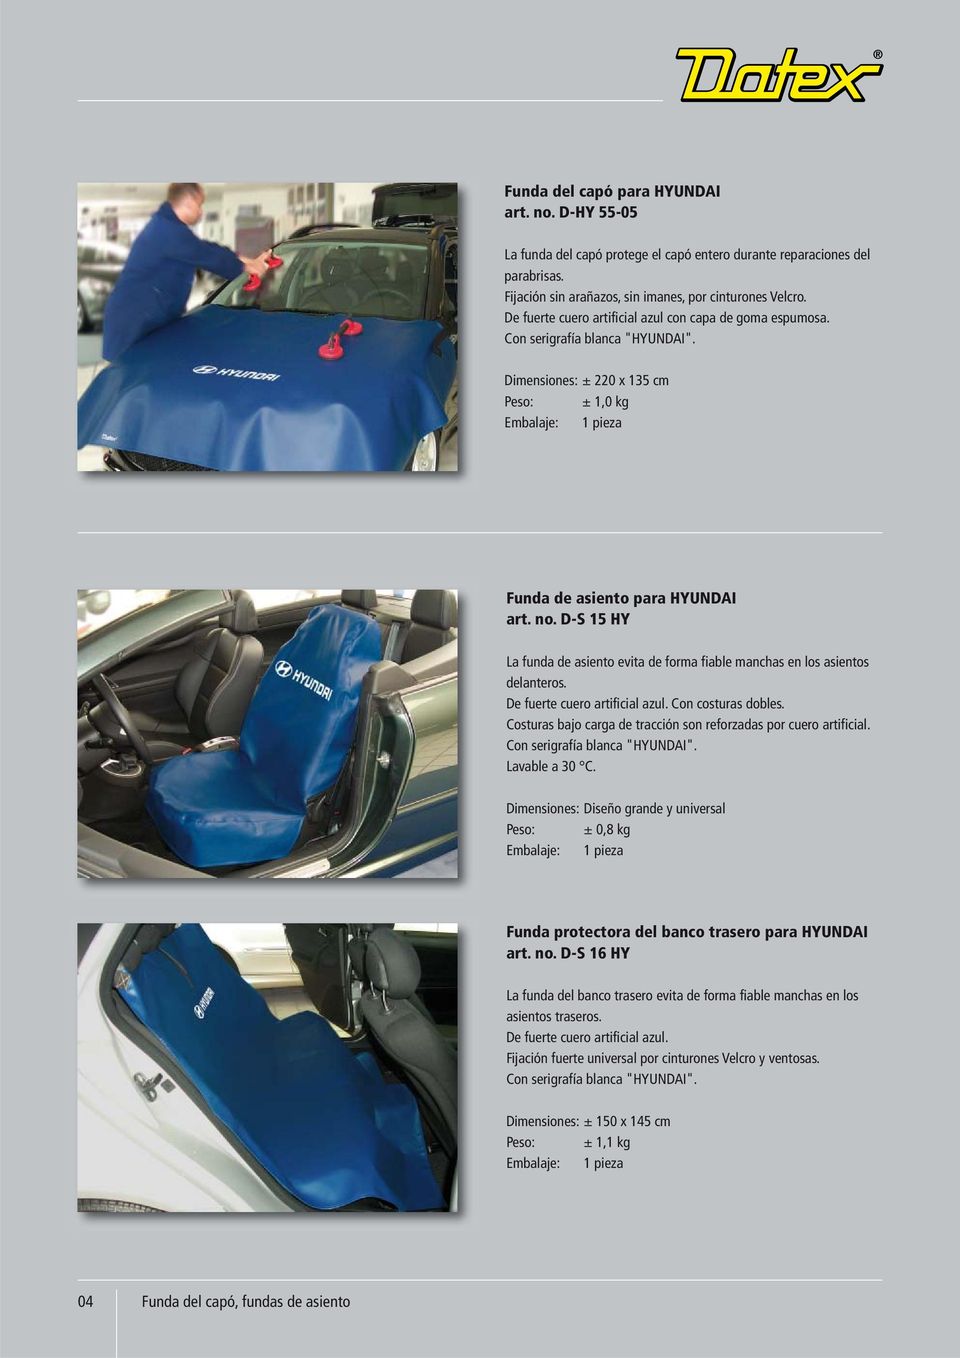 D-S 15 HY La funda de asiento evita de forma fiable manchas en los asientos delanteros. De fuerte cuero artificial azul. Con costuras dobles.